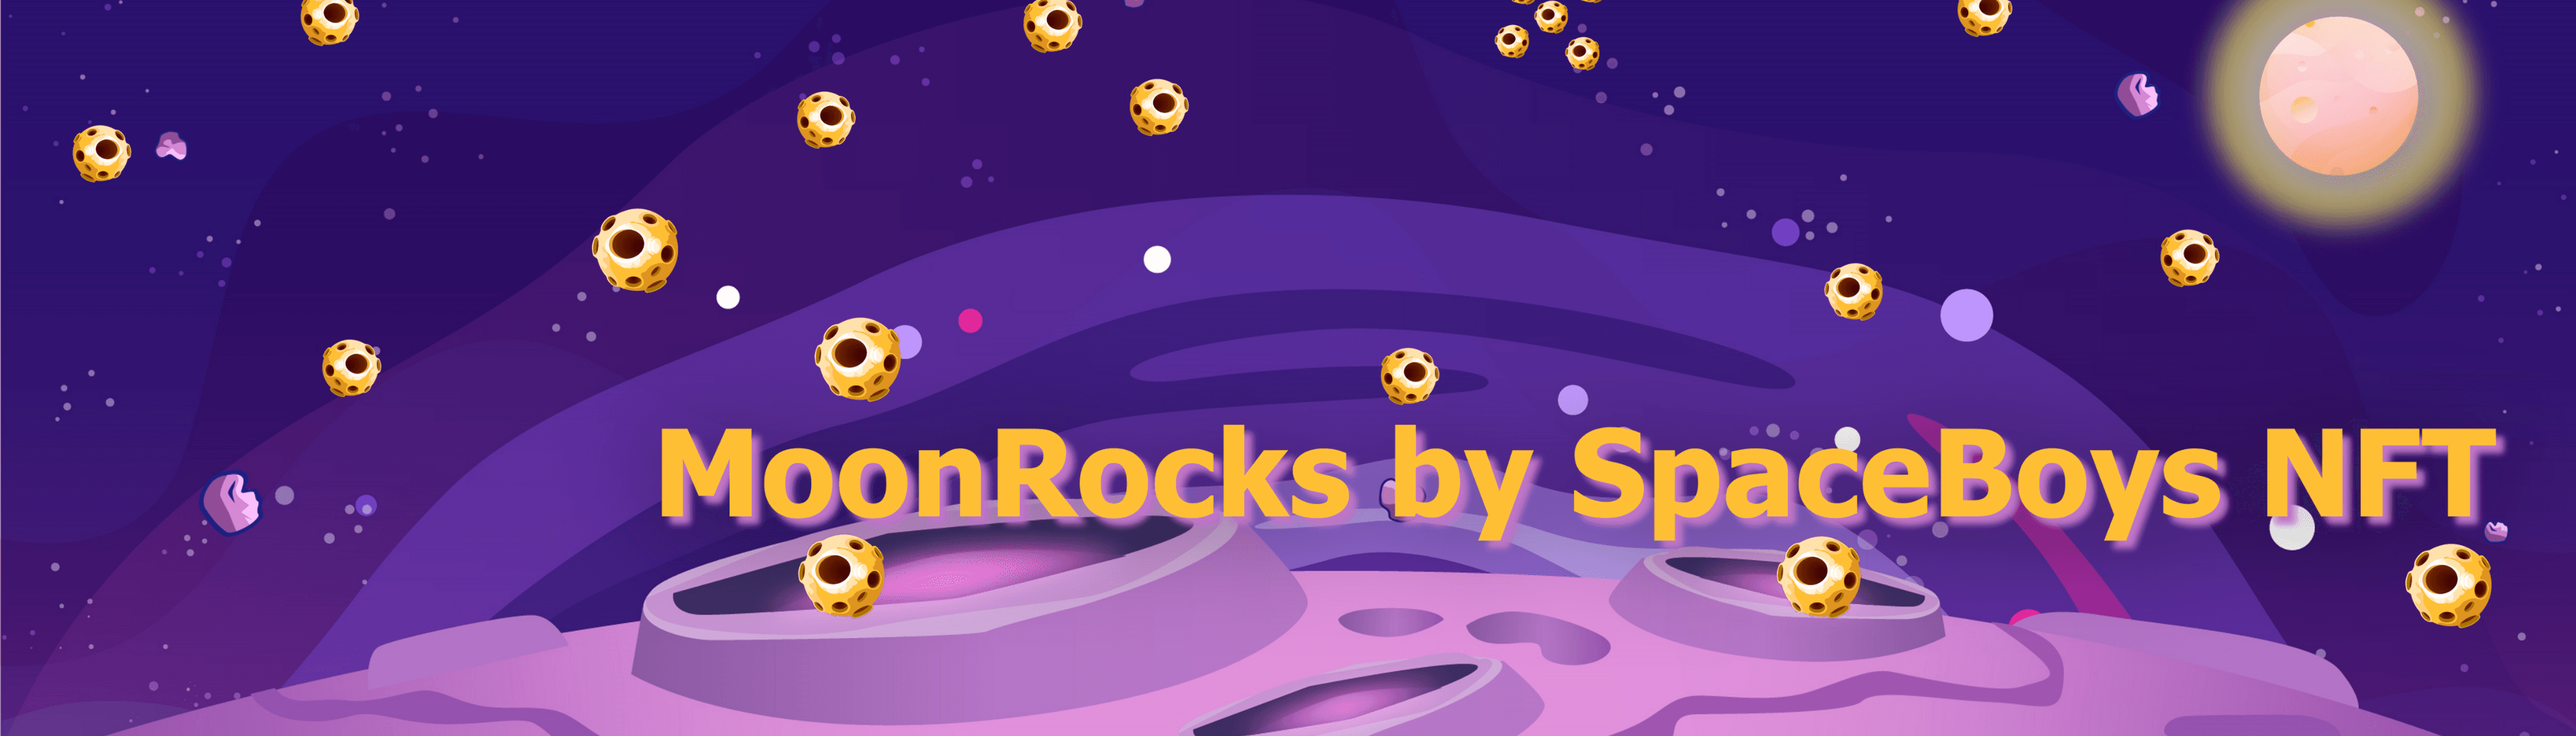 MoonRocks by SpaceBoys